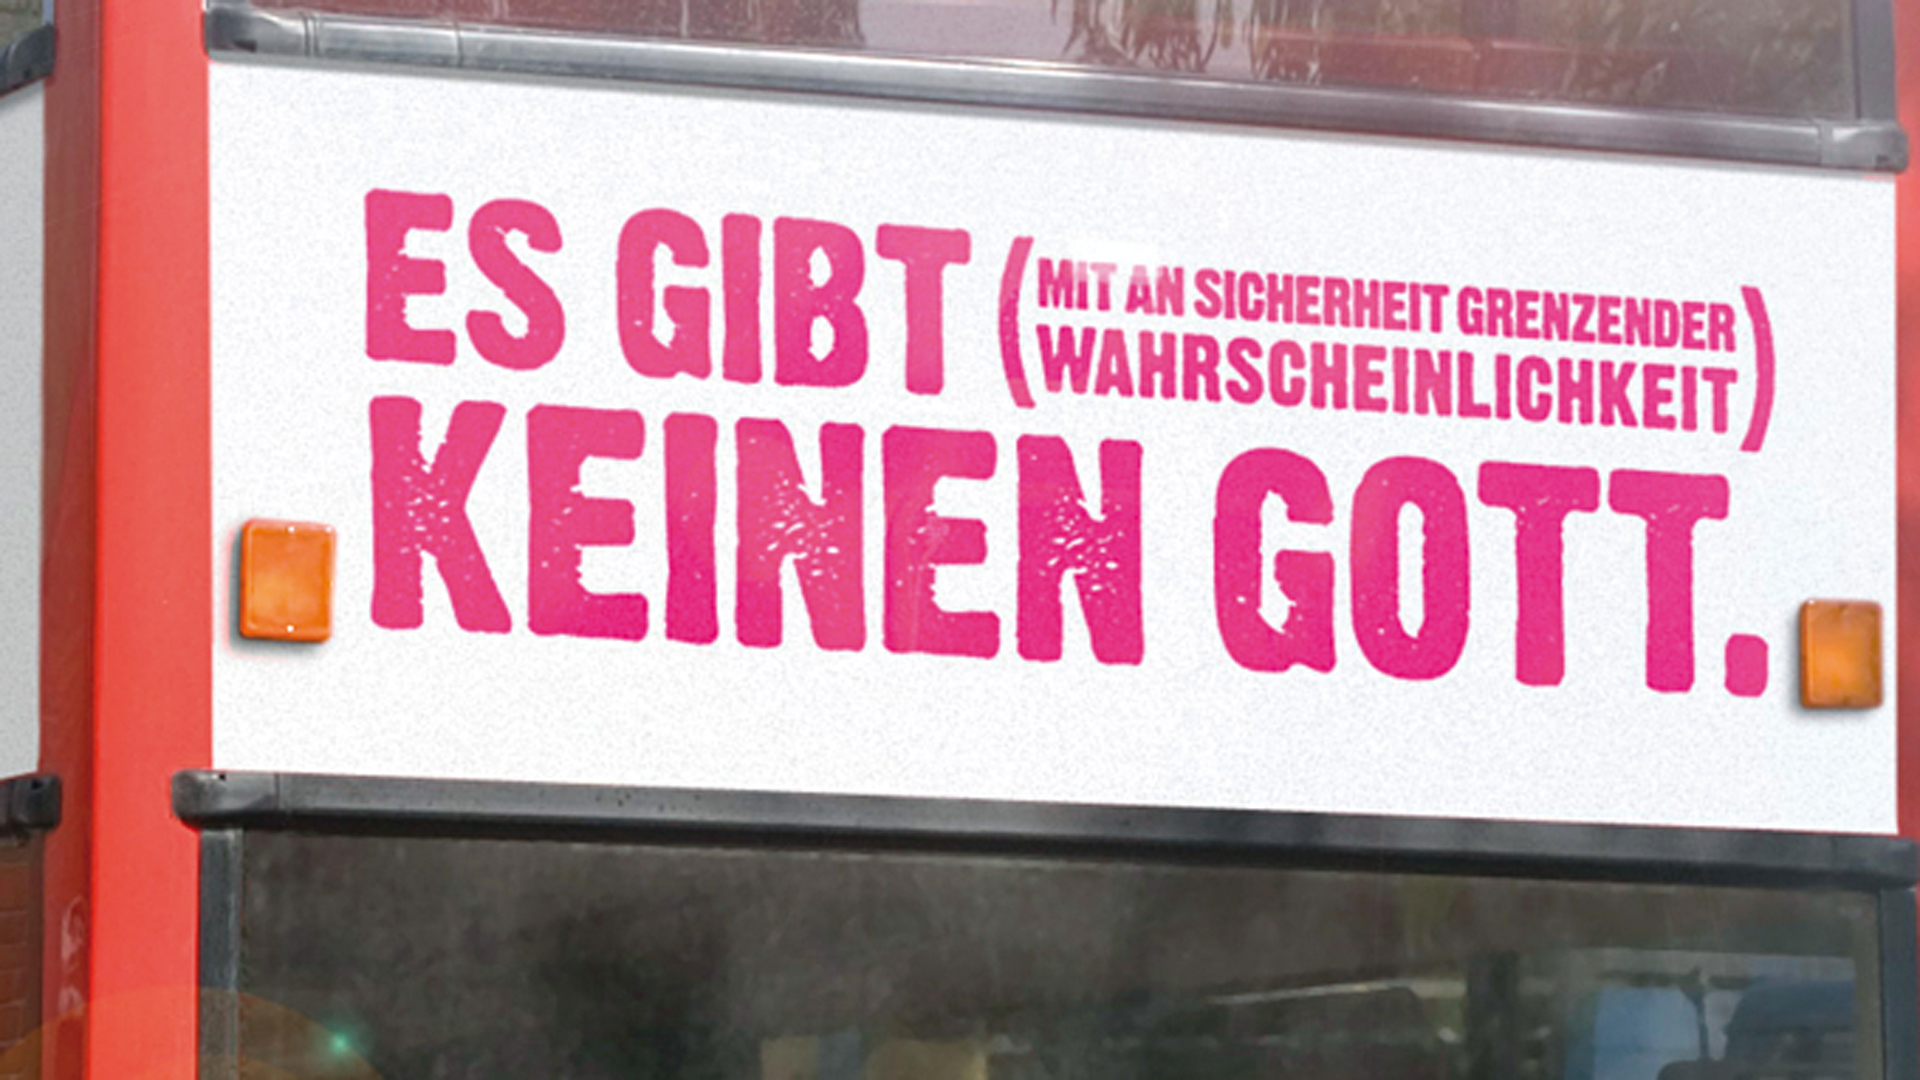 Vor zehn Jahren fuhr ein Bus mit atheistischem Slogan durch die Bundesrepublik. Er sollte für die Anliegen derer werben, die nicht an Gott glauben.